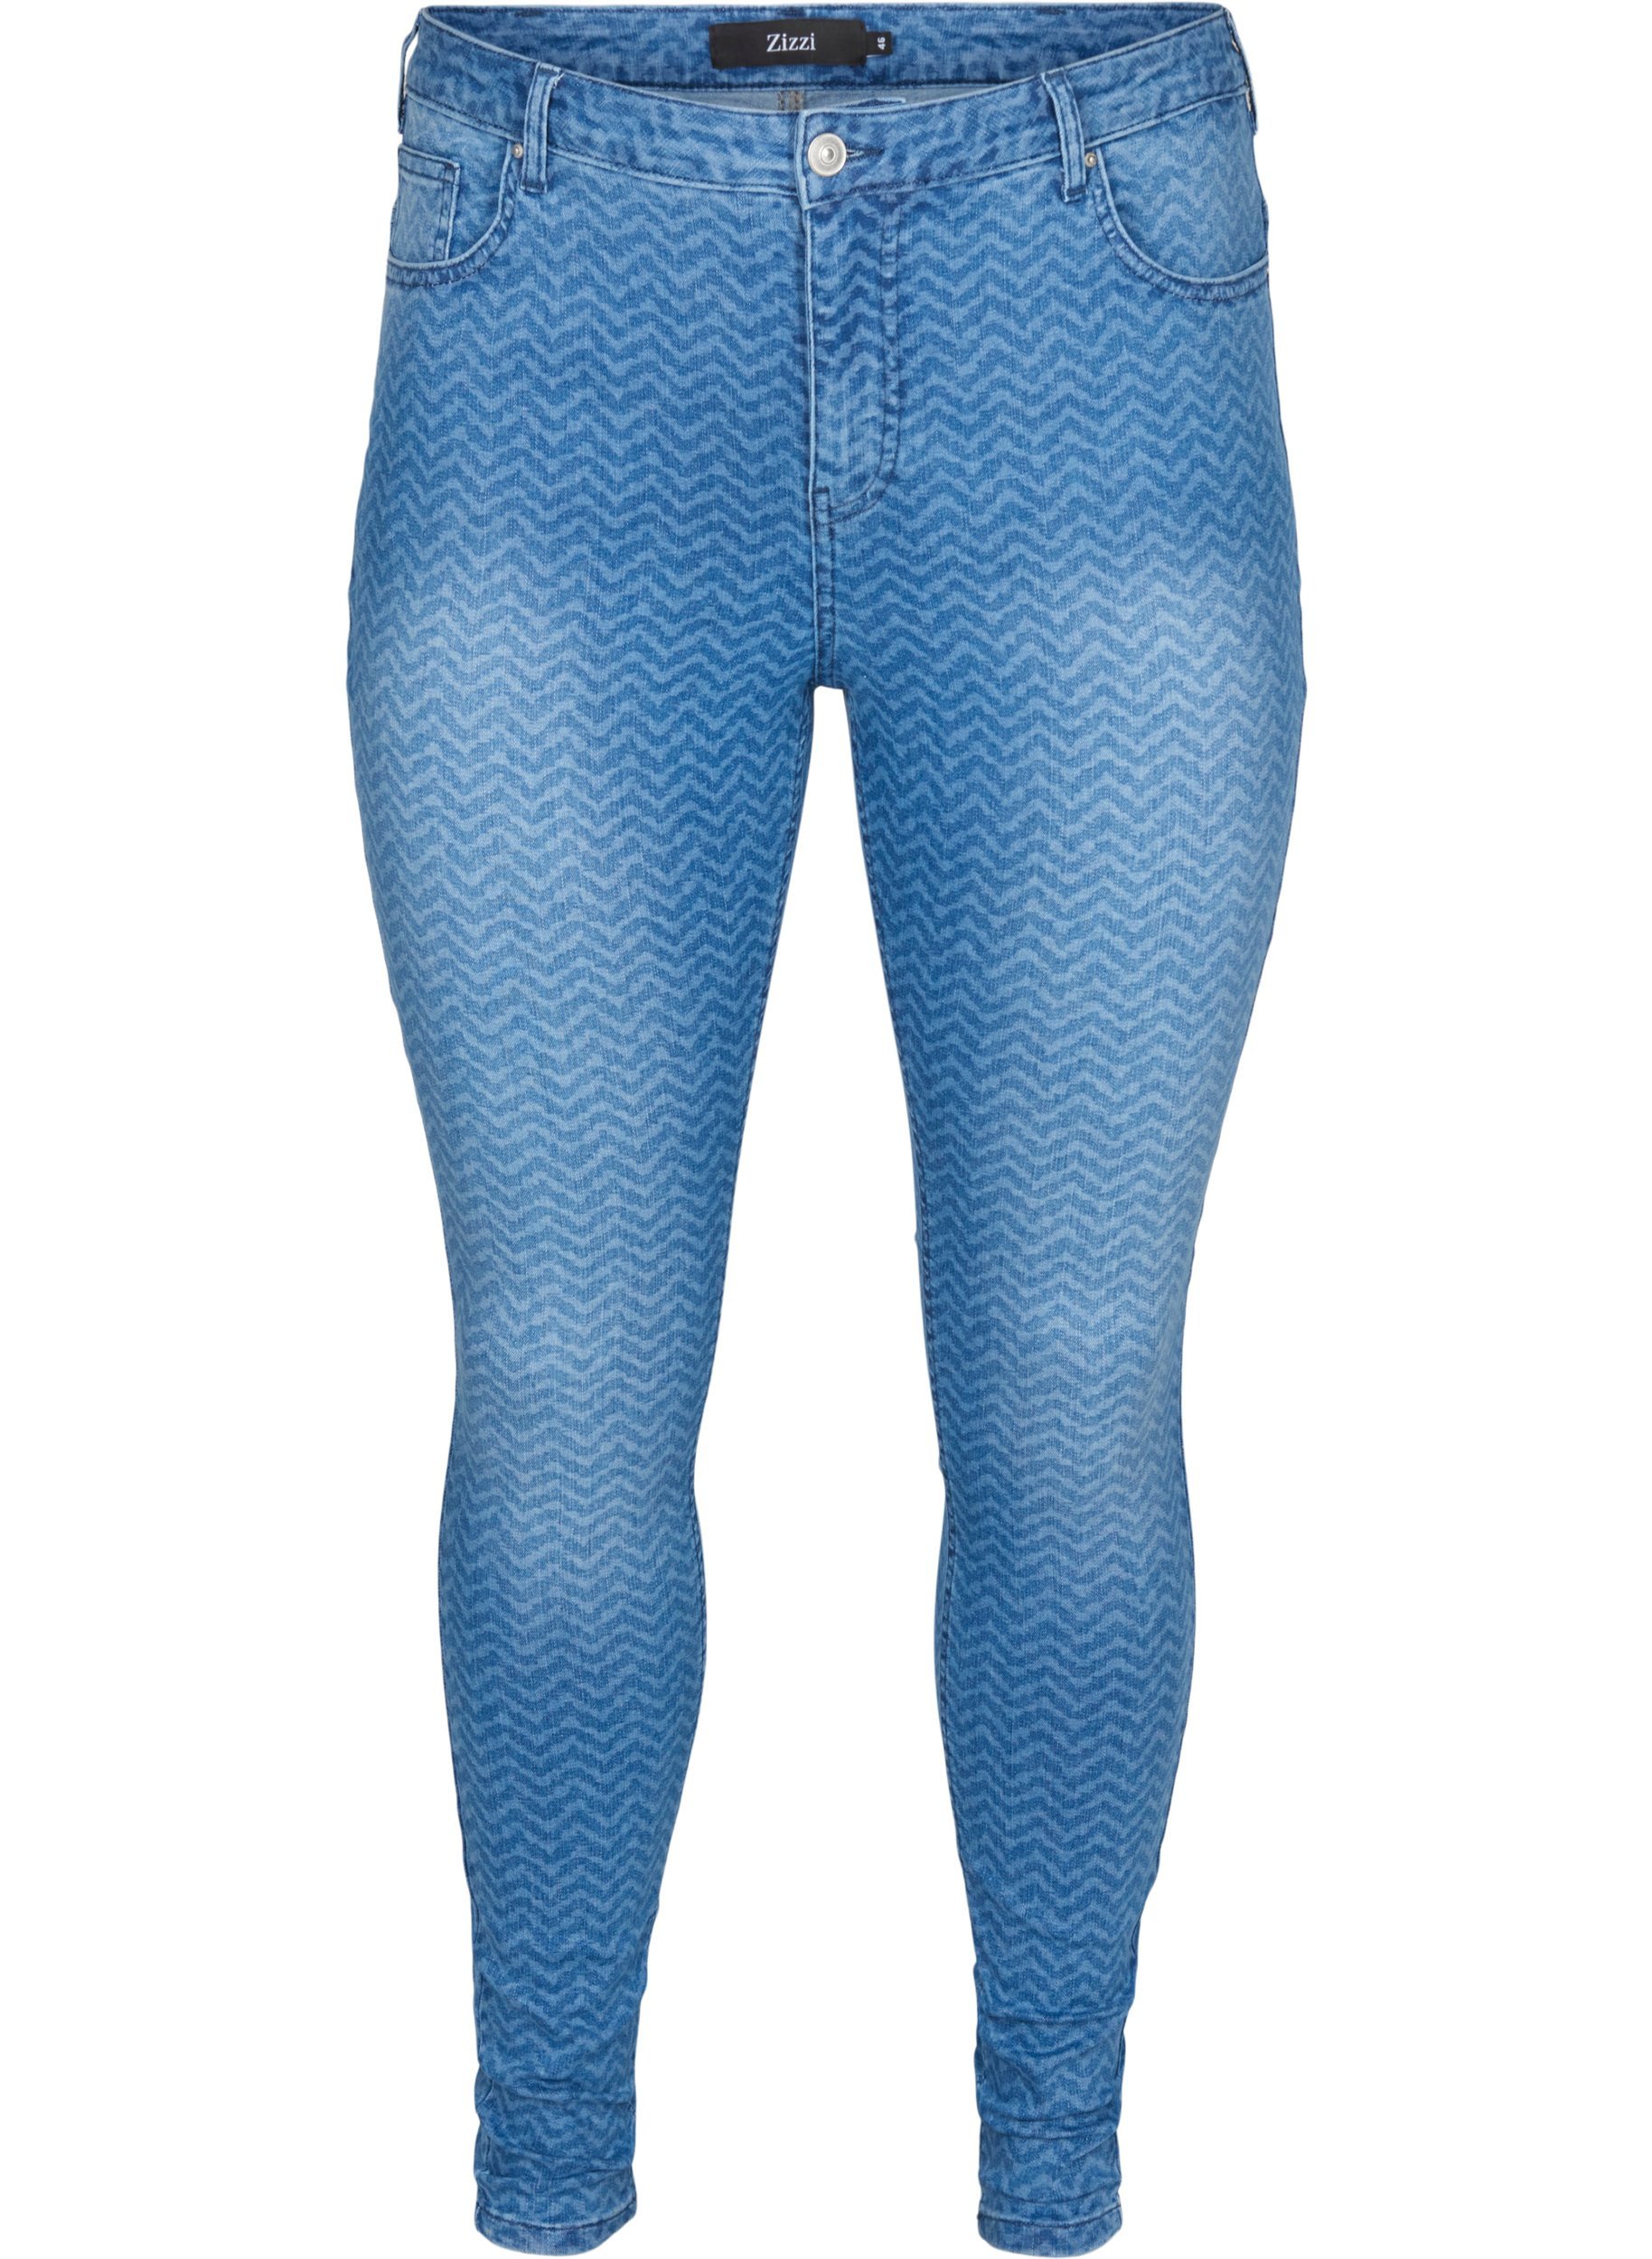 Mönstrade Amy jeans med hög midja, Ethnic Print